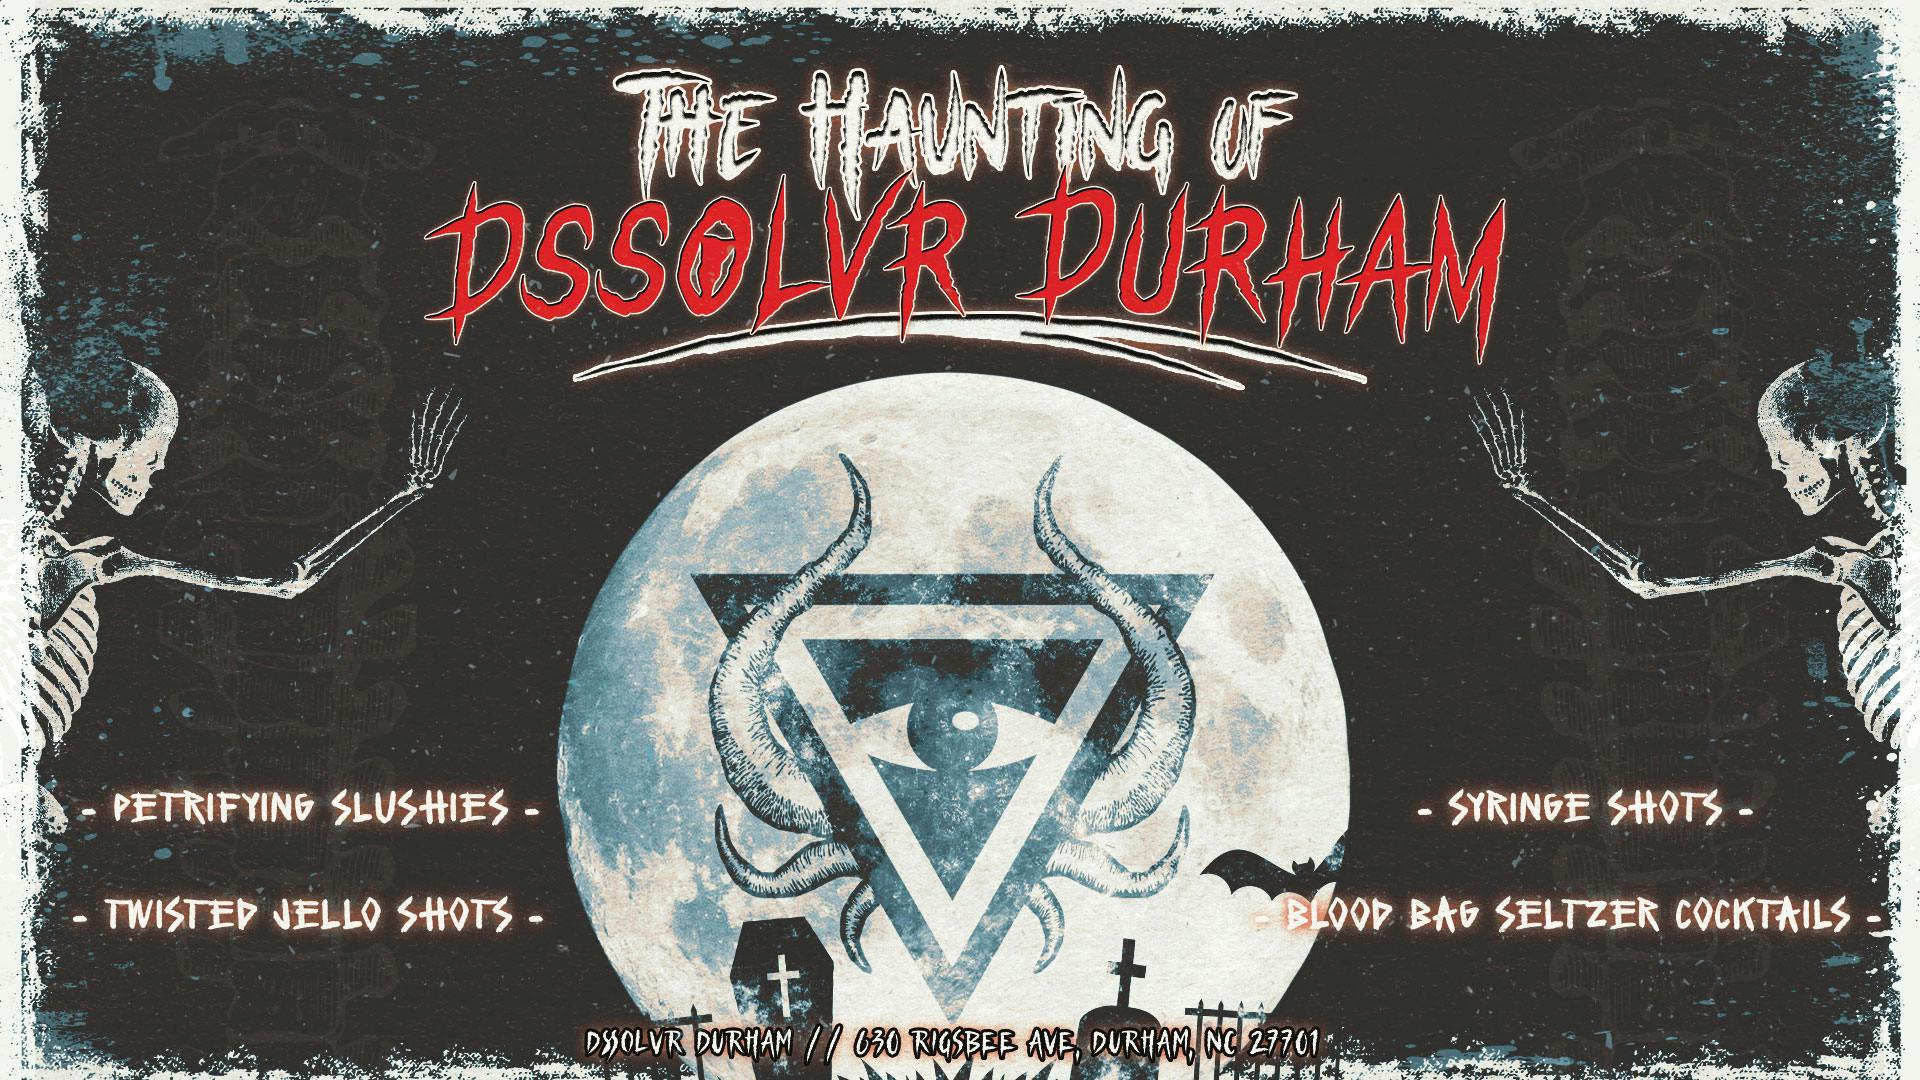 durham-halloween-banner